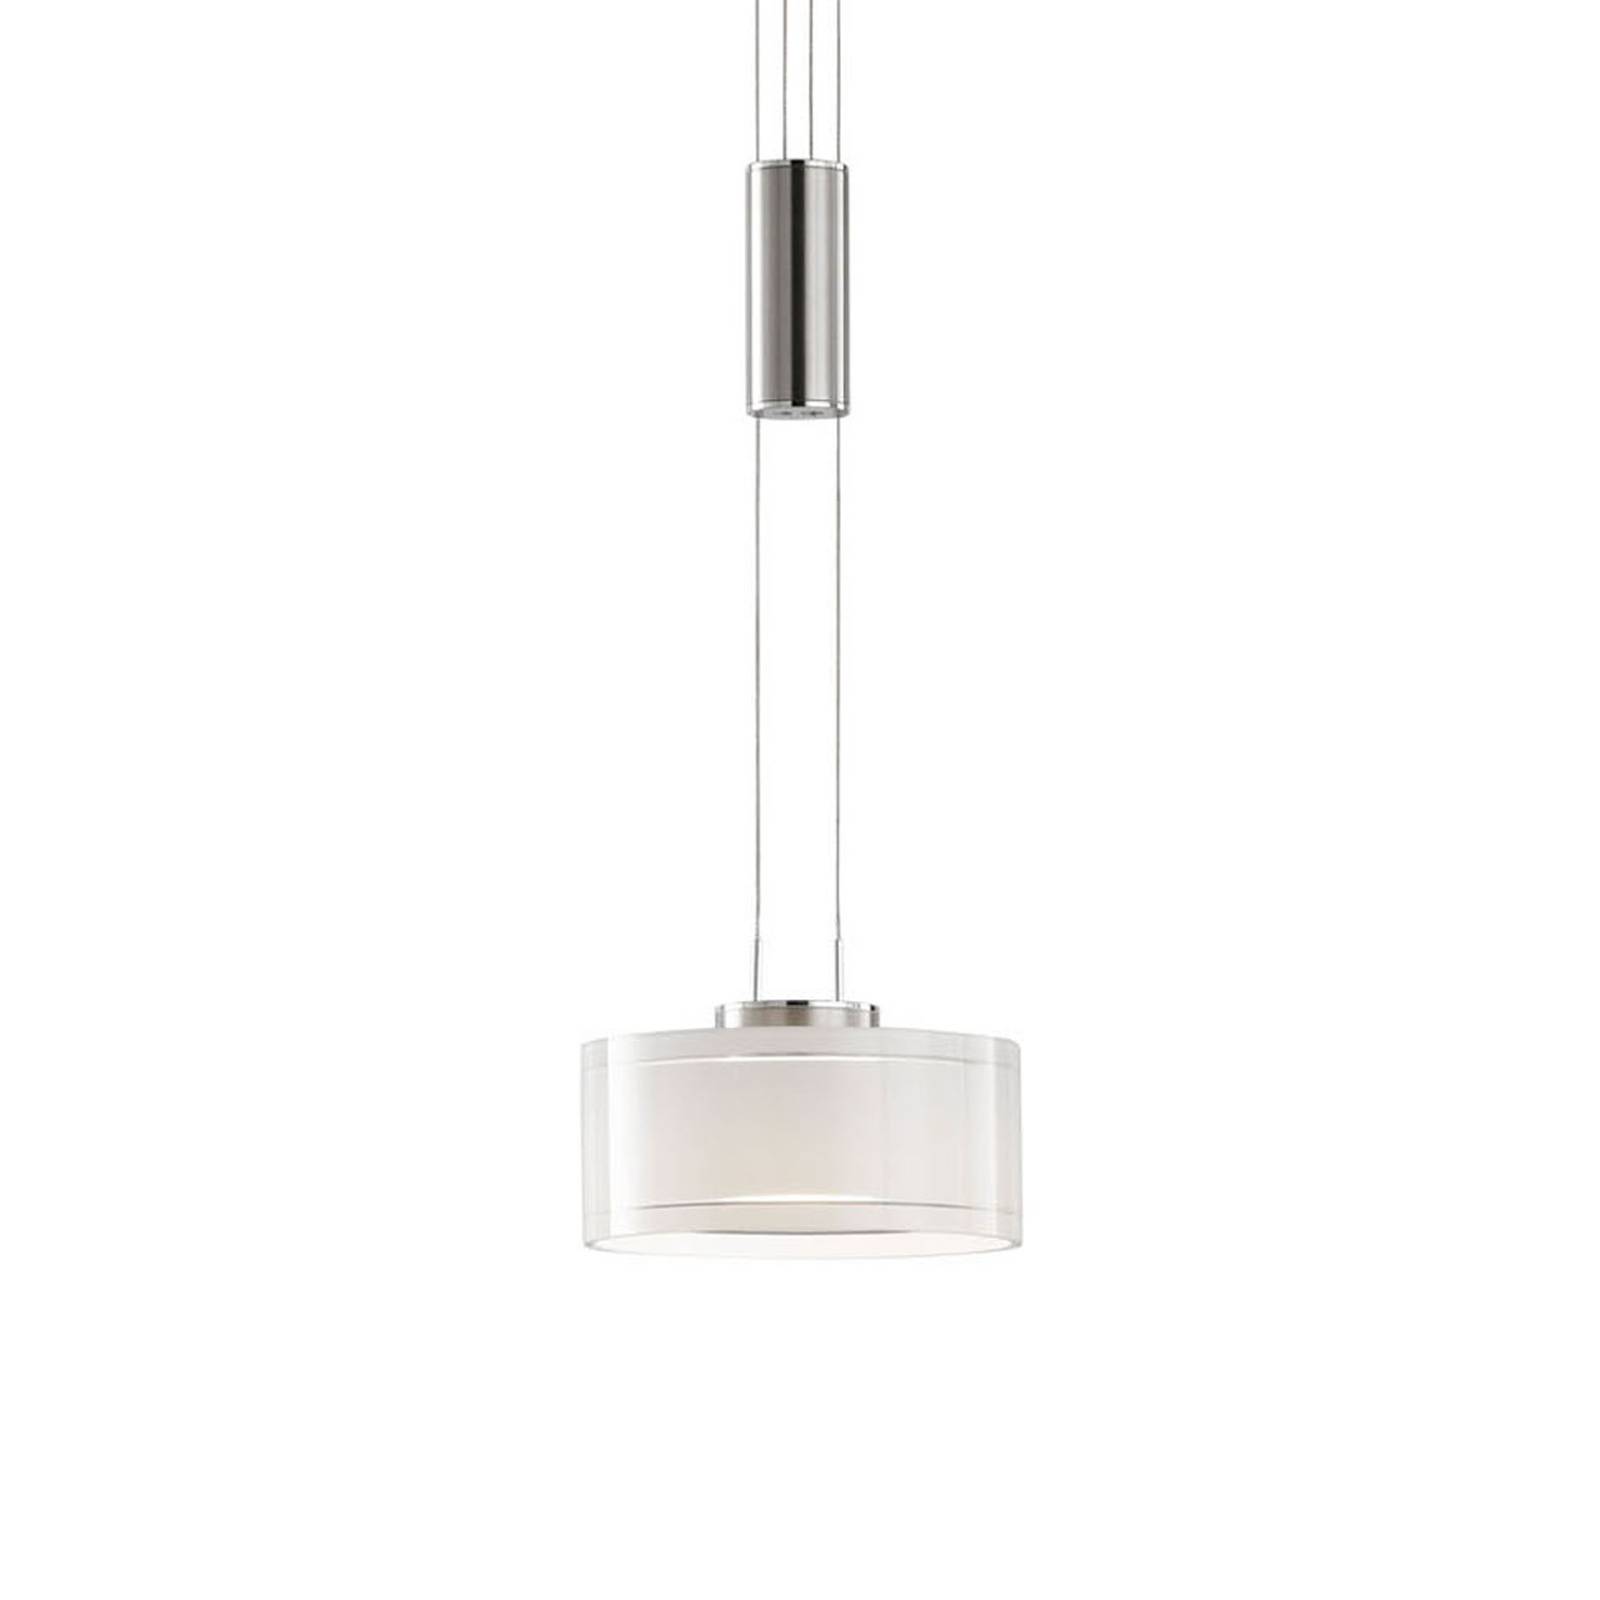 LED hanglamp Lavin 1-lamp nikkel/wit